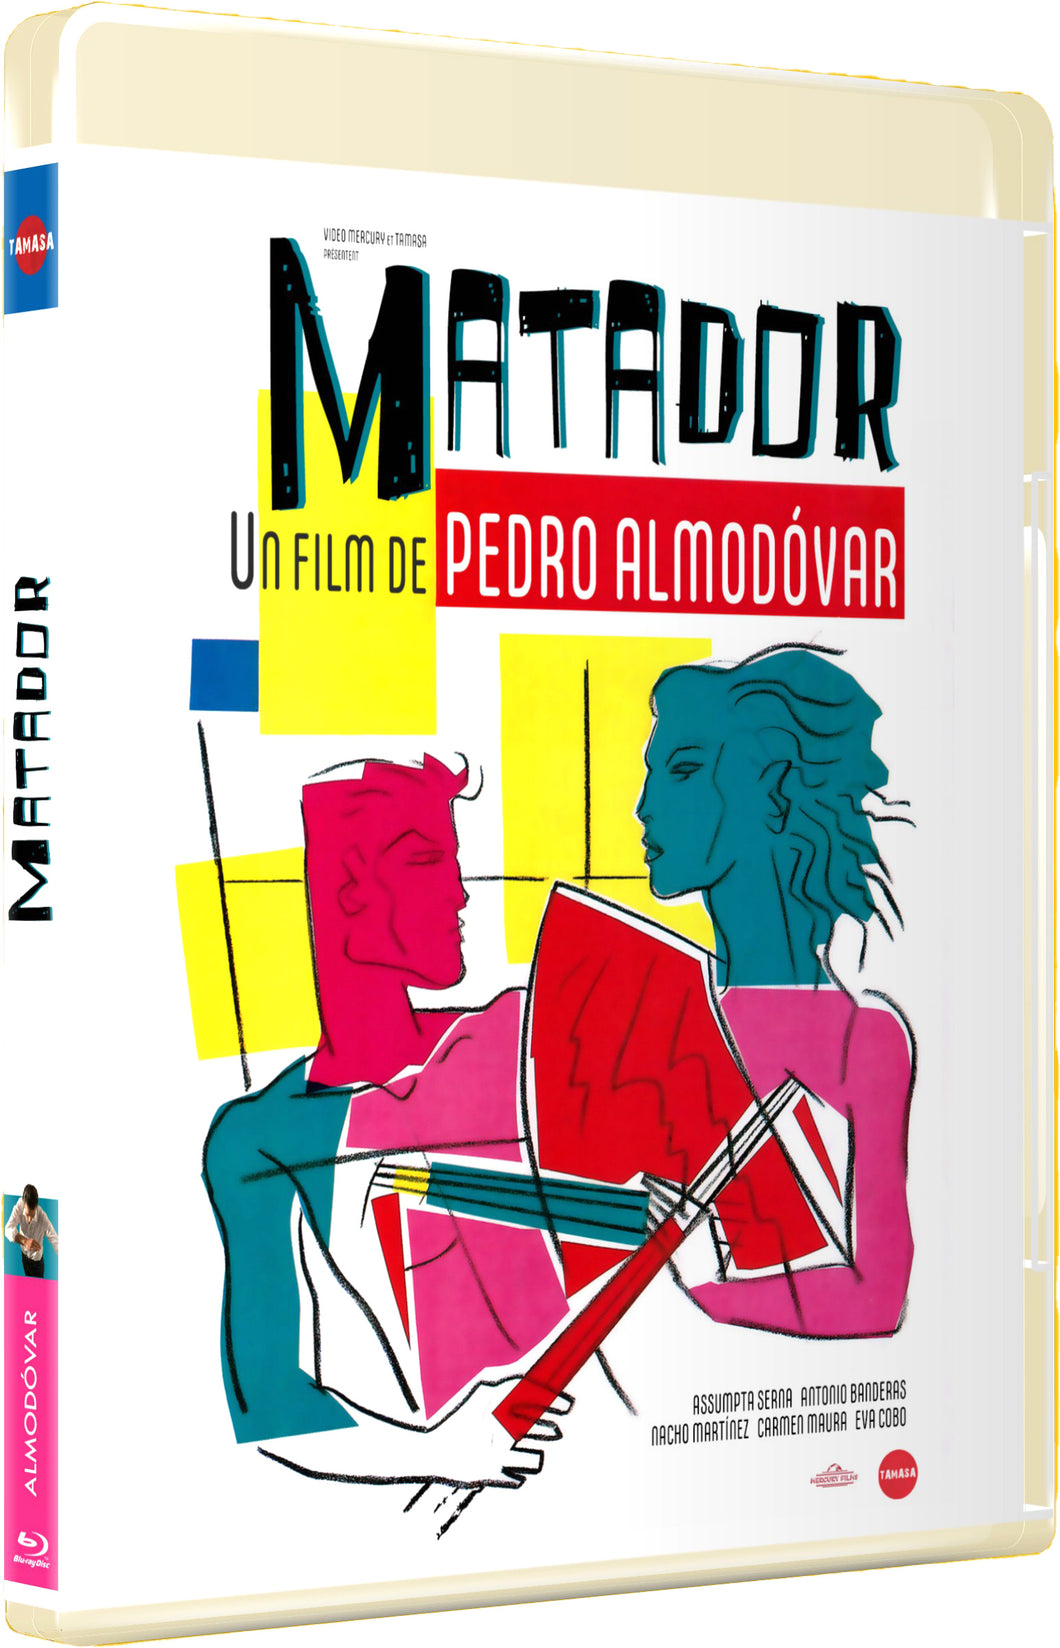 Matador (1986) de Pedro Almodovar - front cover